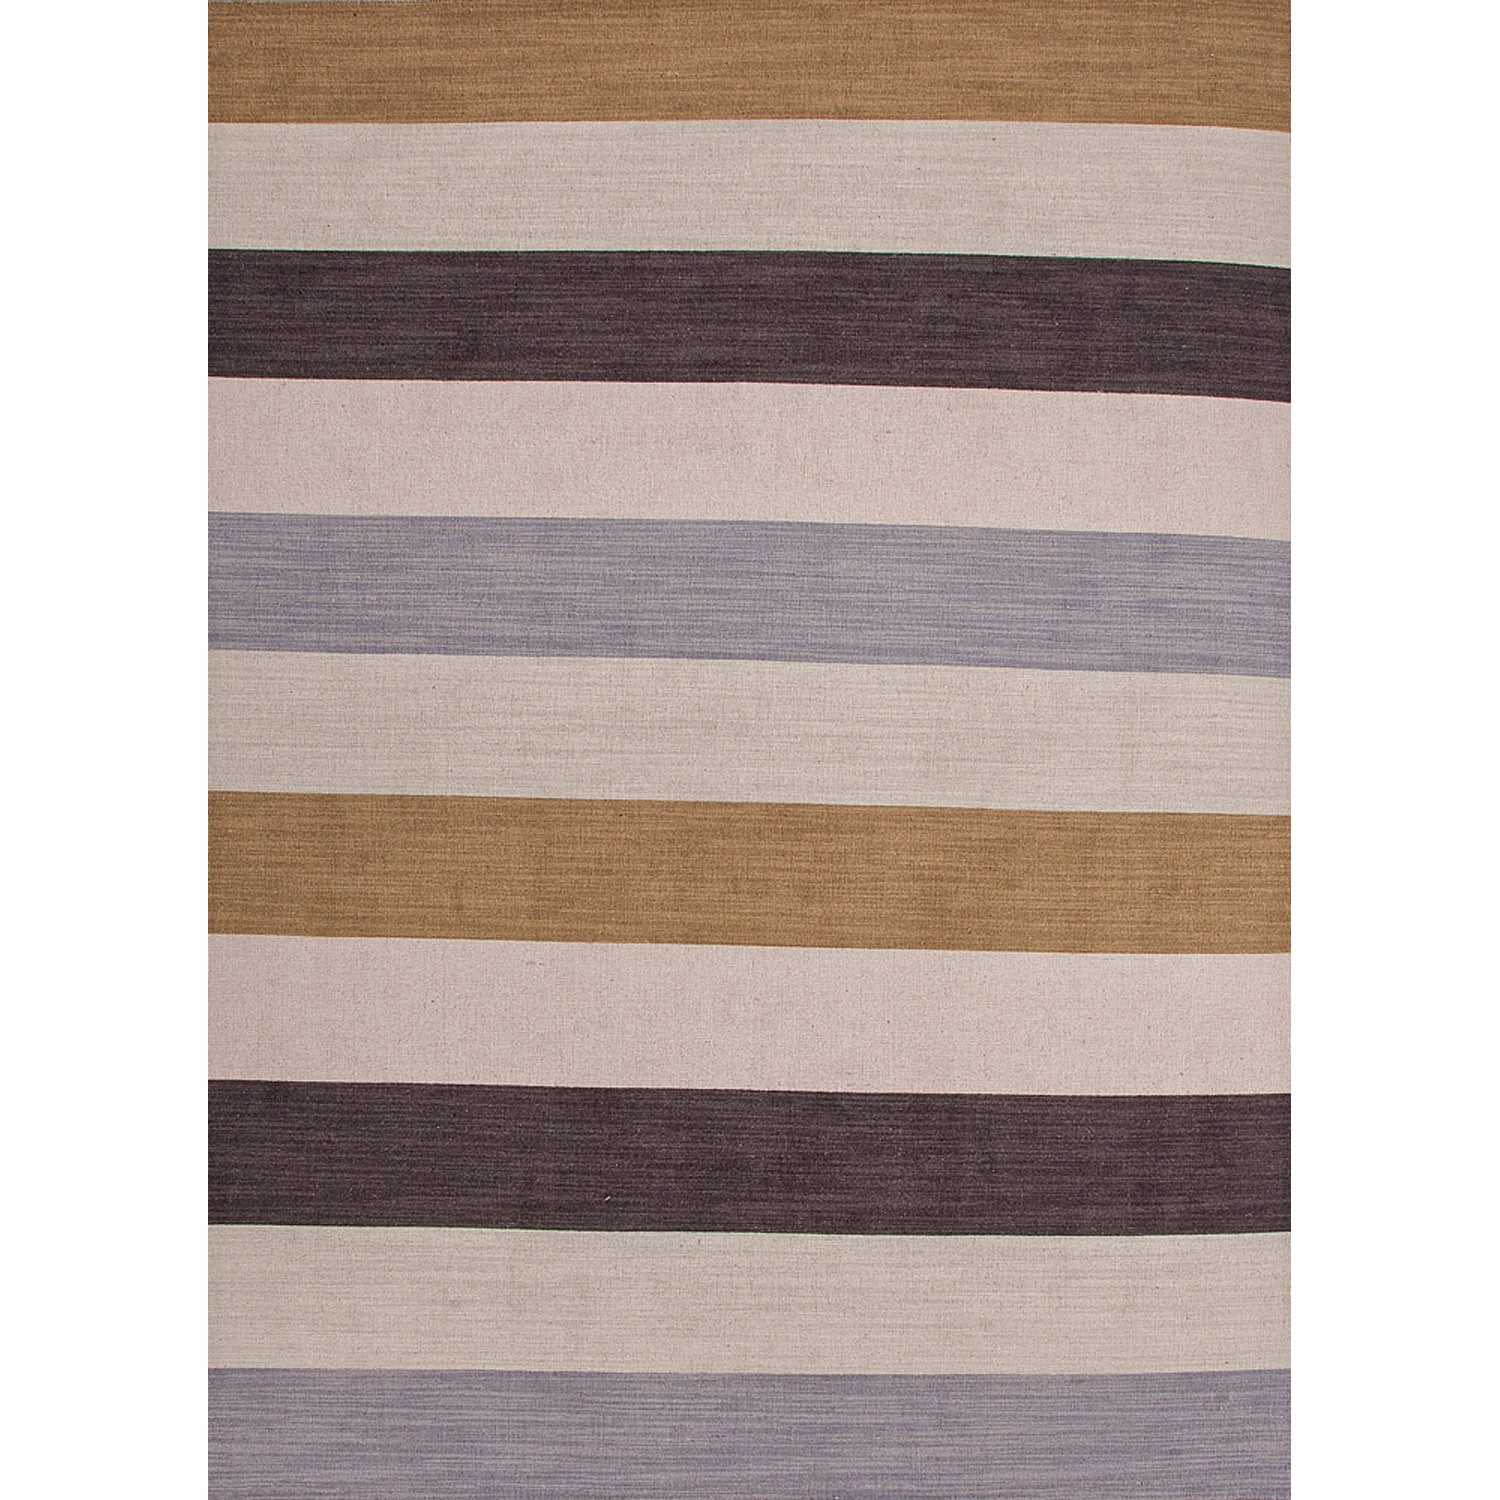 Handmade Flat weave Stripe pattern Brown Wool Rug (5 X 8)